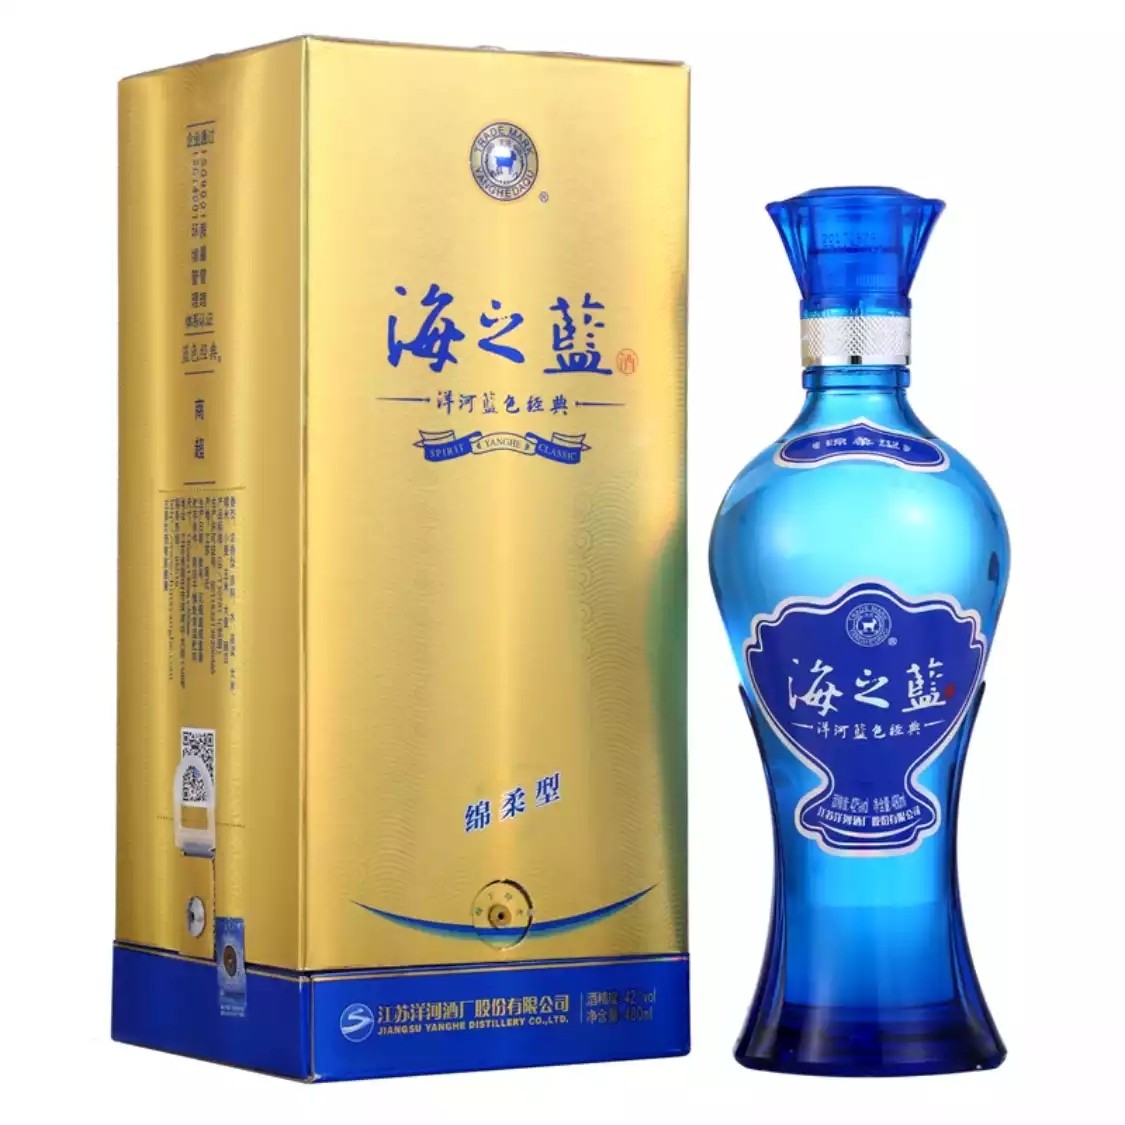 洋河蓝色经典 海之蓝 42度 单瓶装白酒480ml